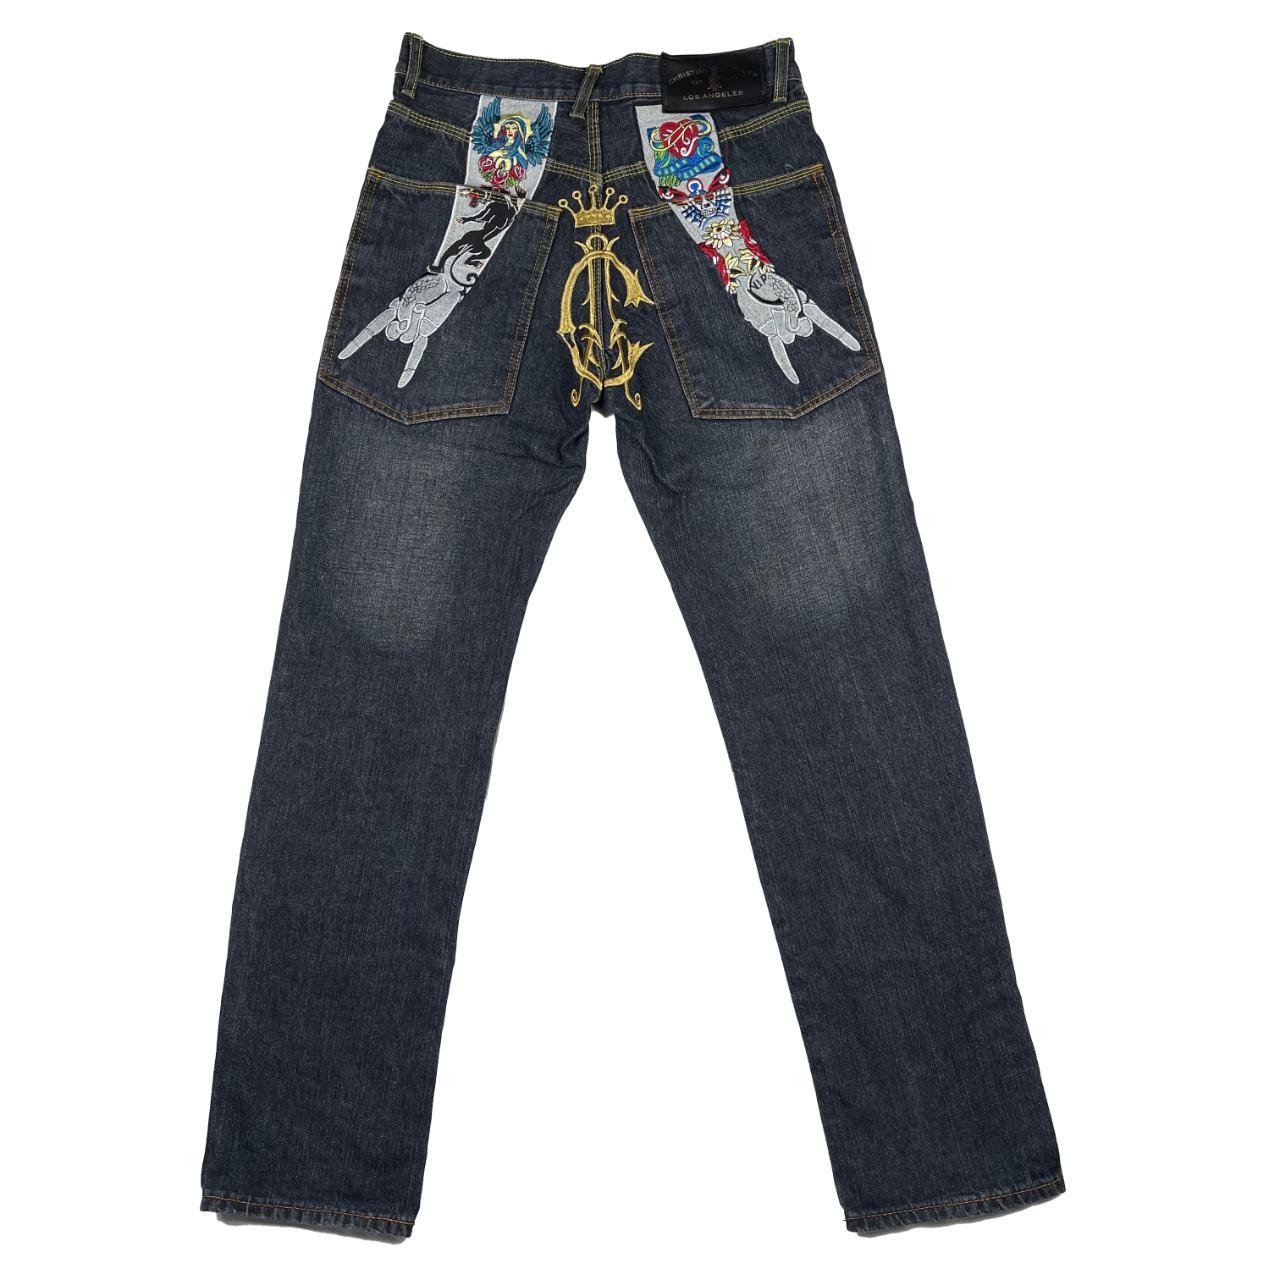 Christian Audigier Jeans Good condition Size: 30W, 33L - Depop